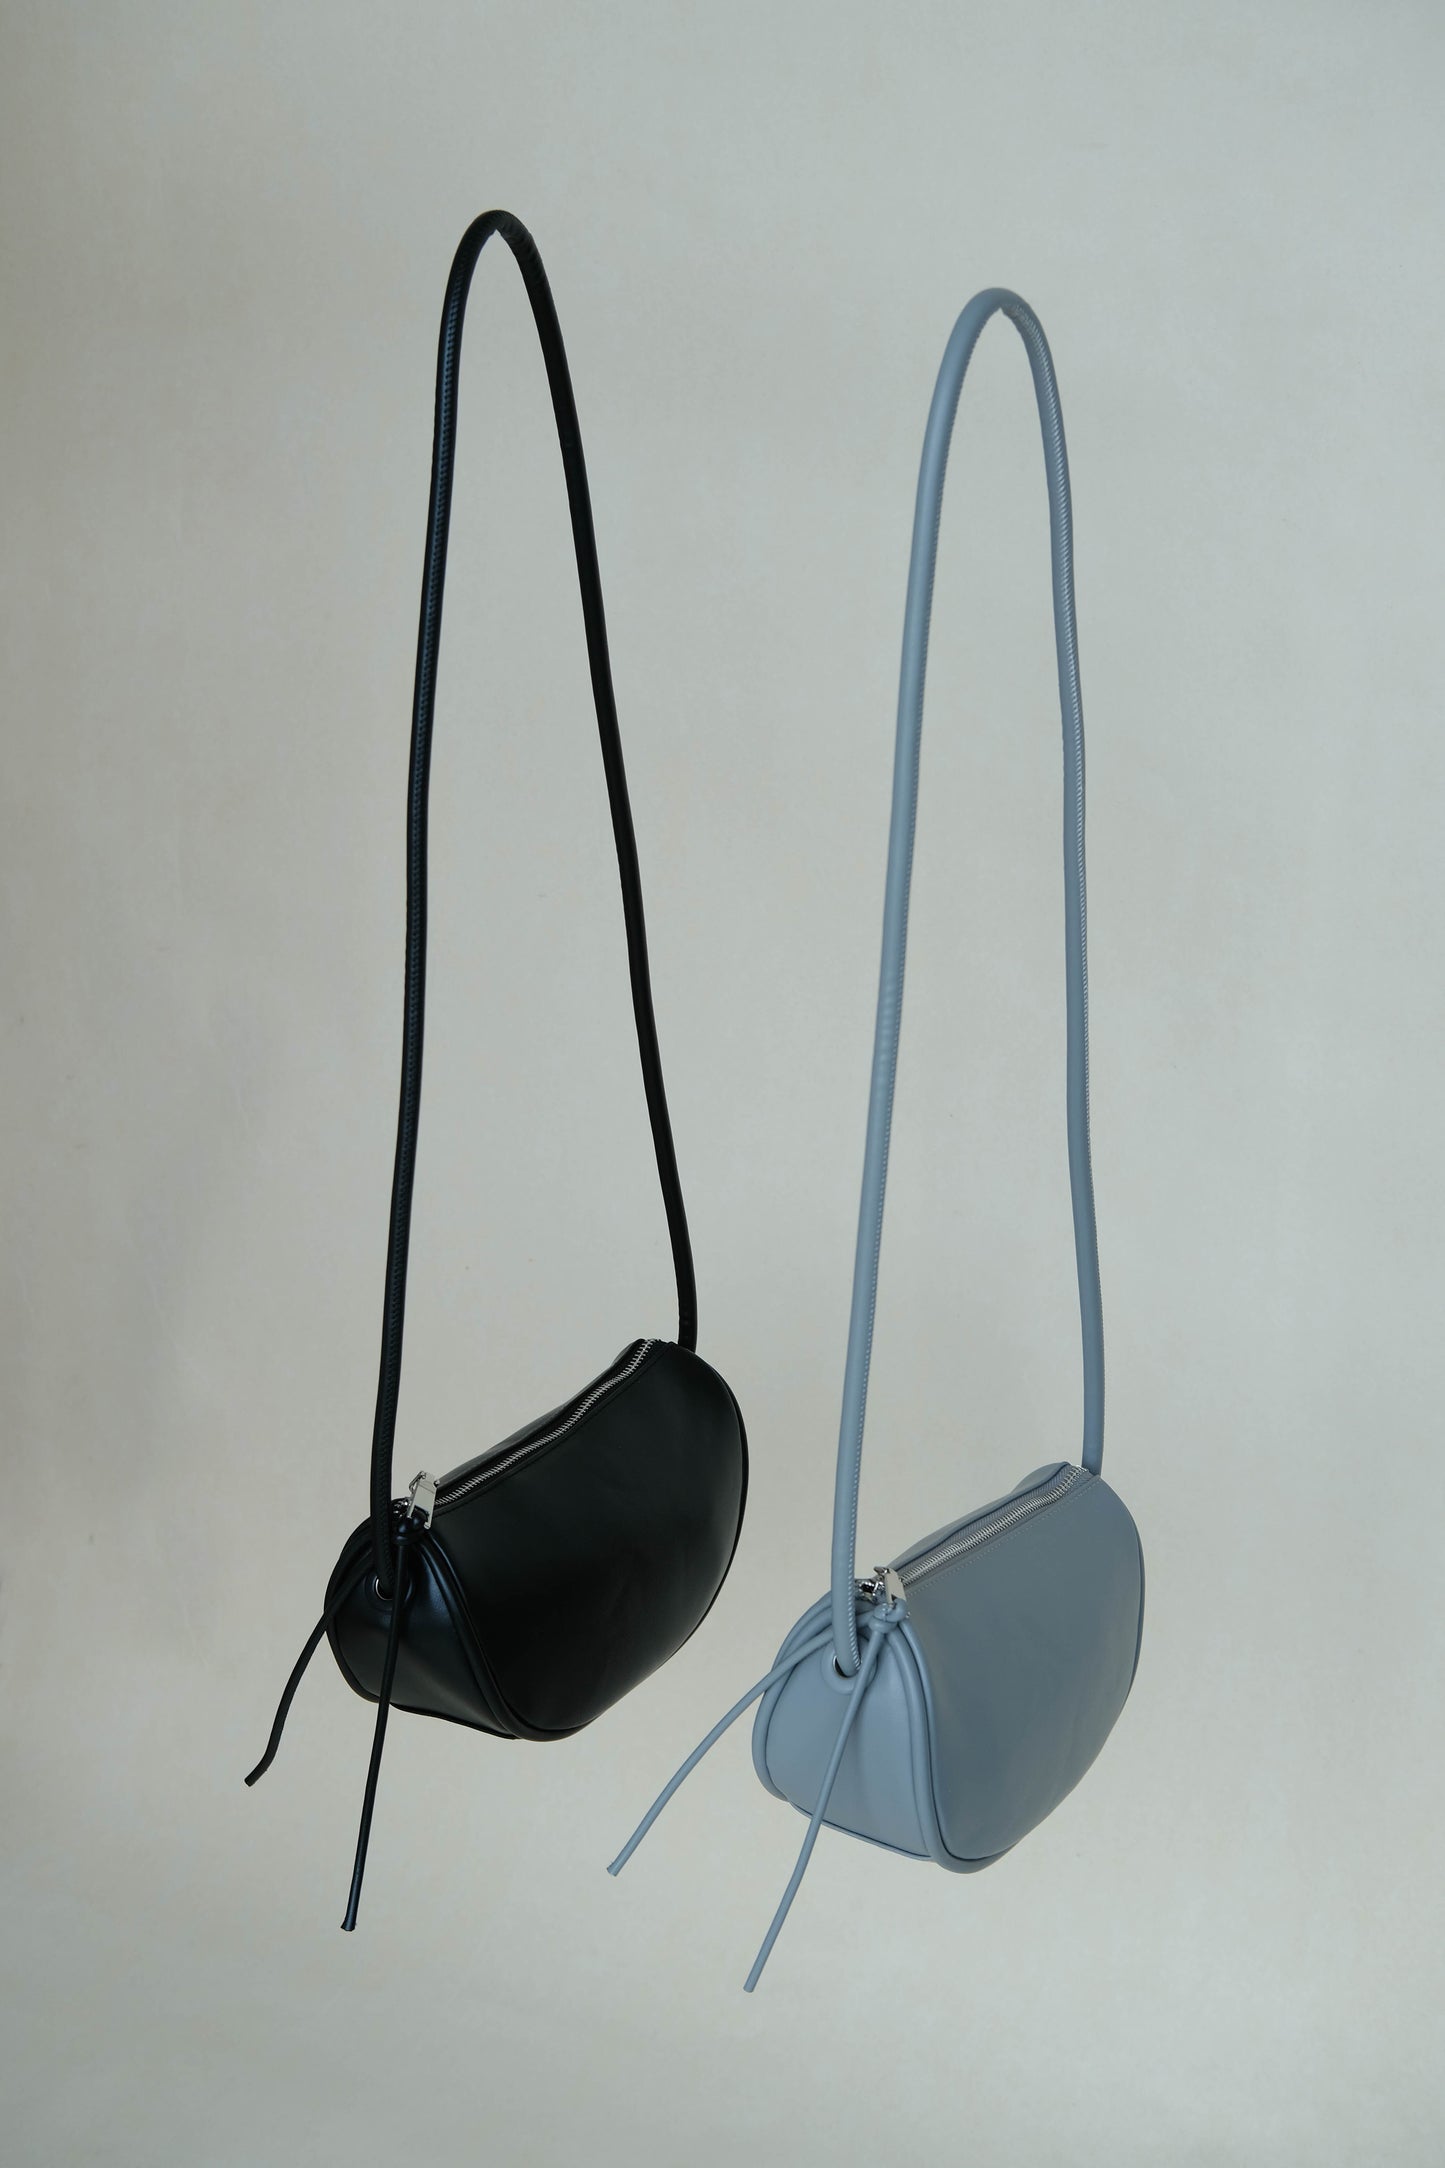 Half-moon saddle shoulder bag in grey blue